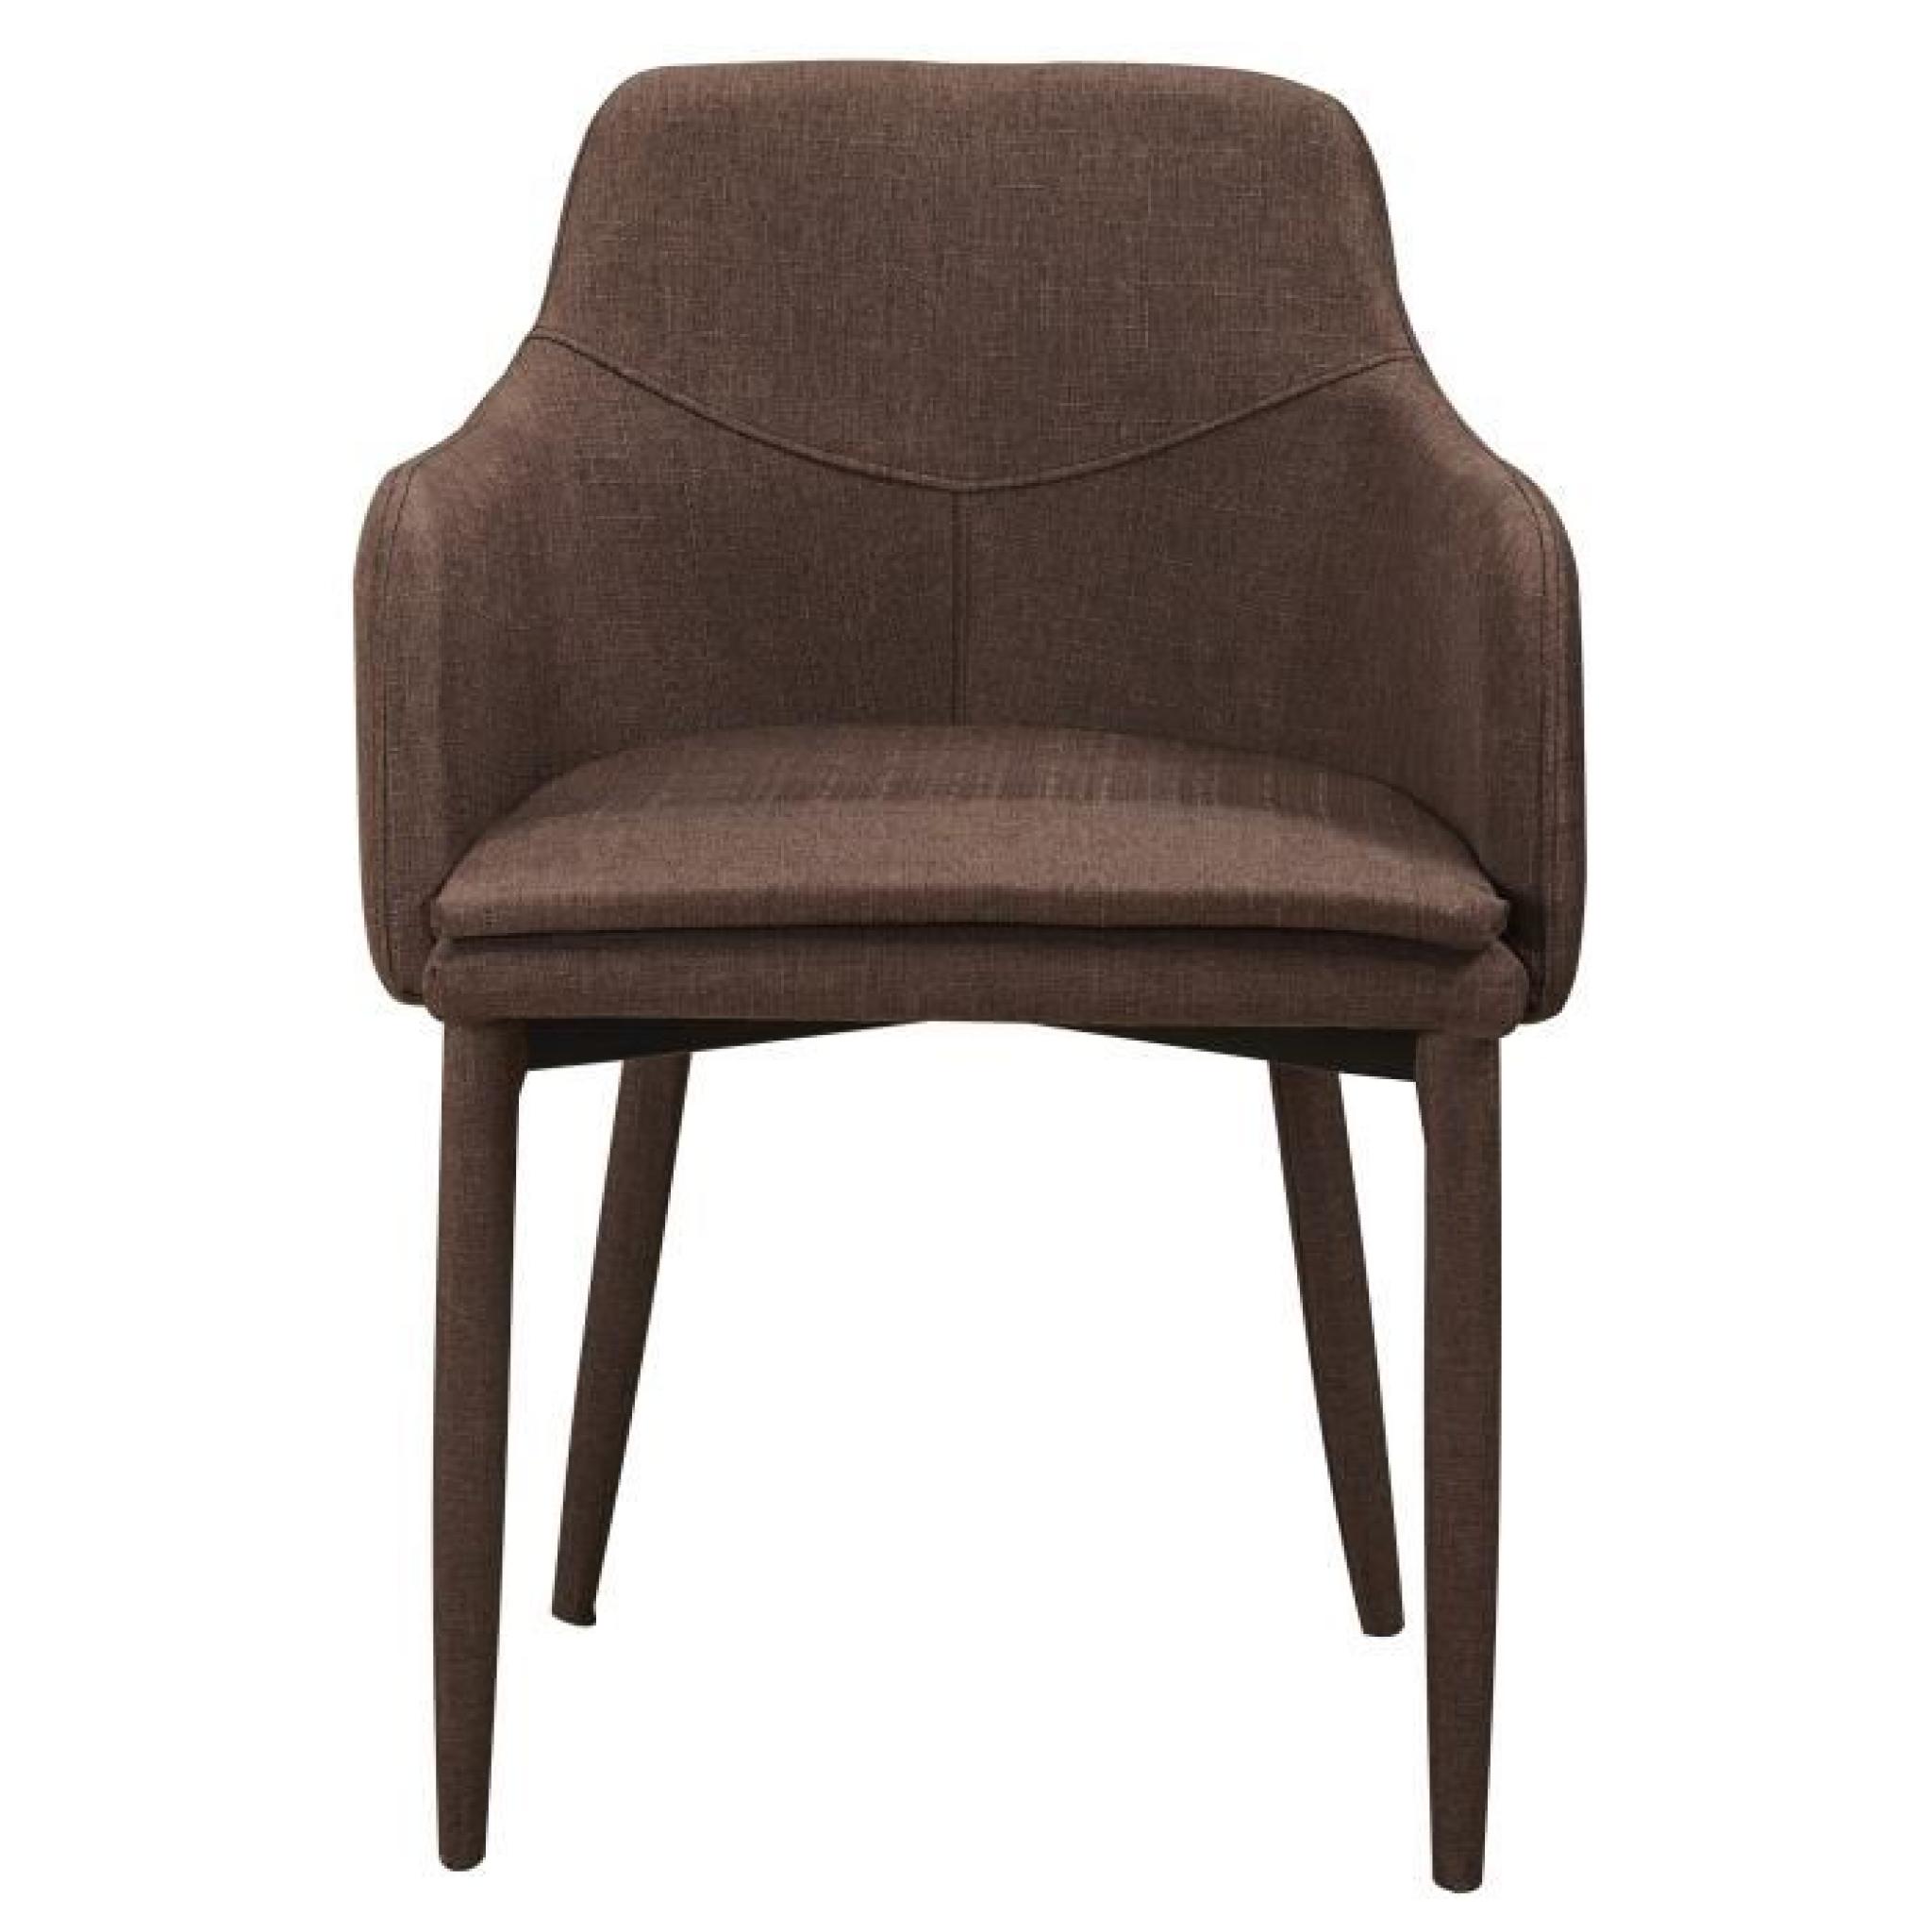 Chaise en tissus design avec accoudoirs coloris chocolat pas cher